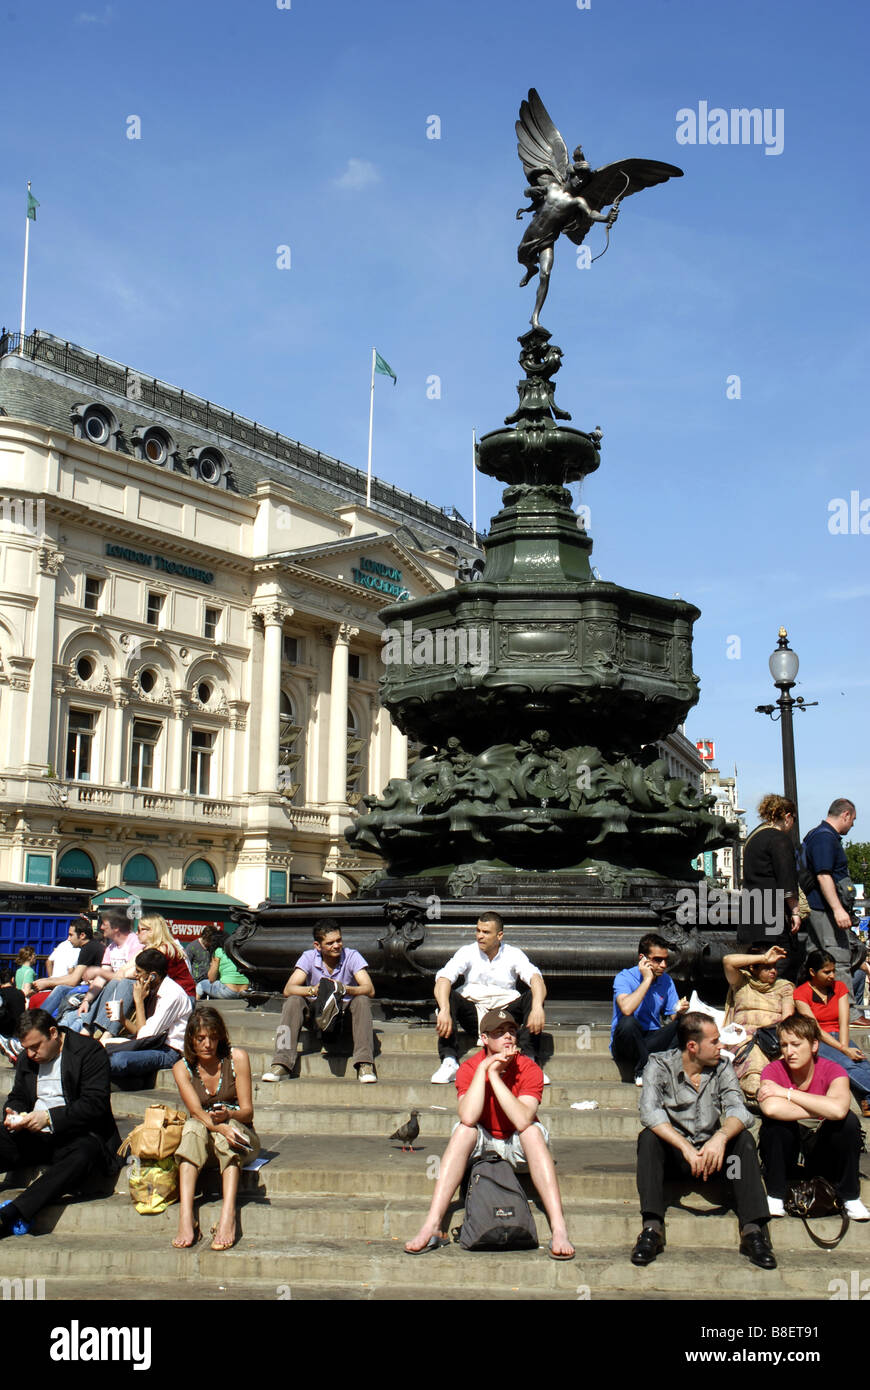 Les touristes assis sur les marches autour de la statue de bronze de l'Éros, Piccadilly Cicus, Londres, Angleterre. Monument érigé en 1893 Banque D'Images